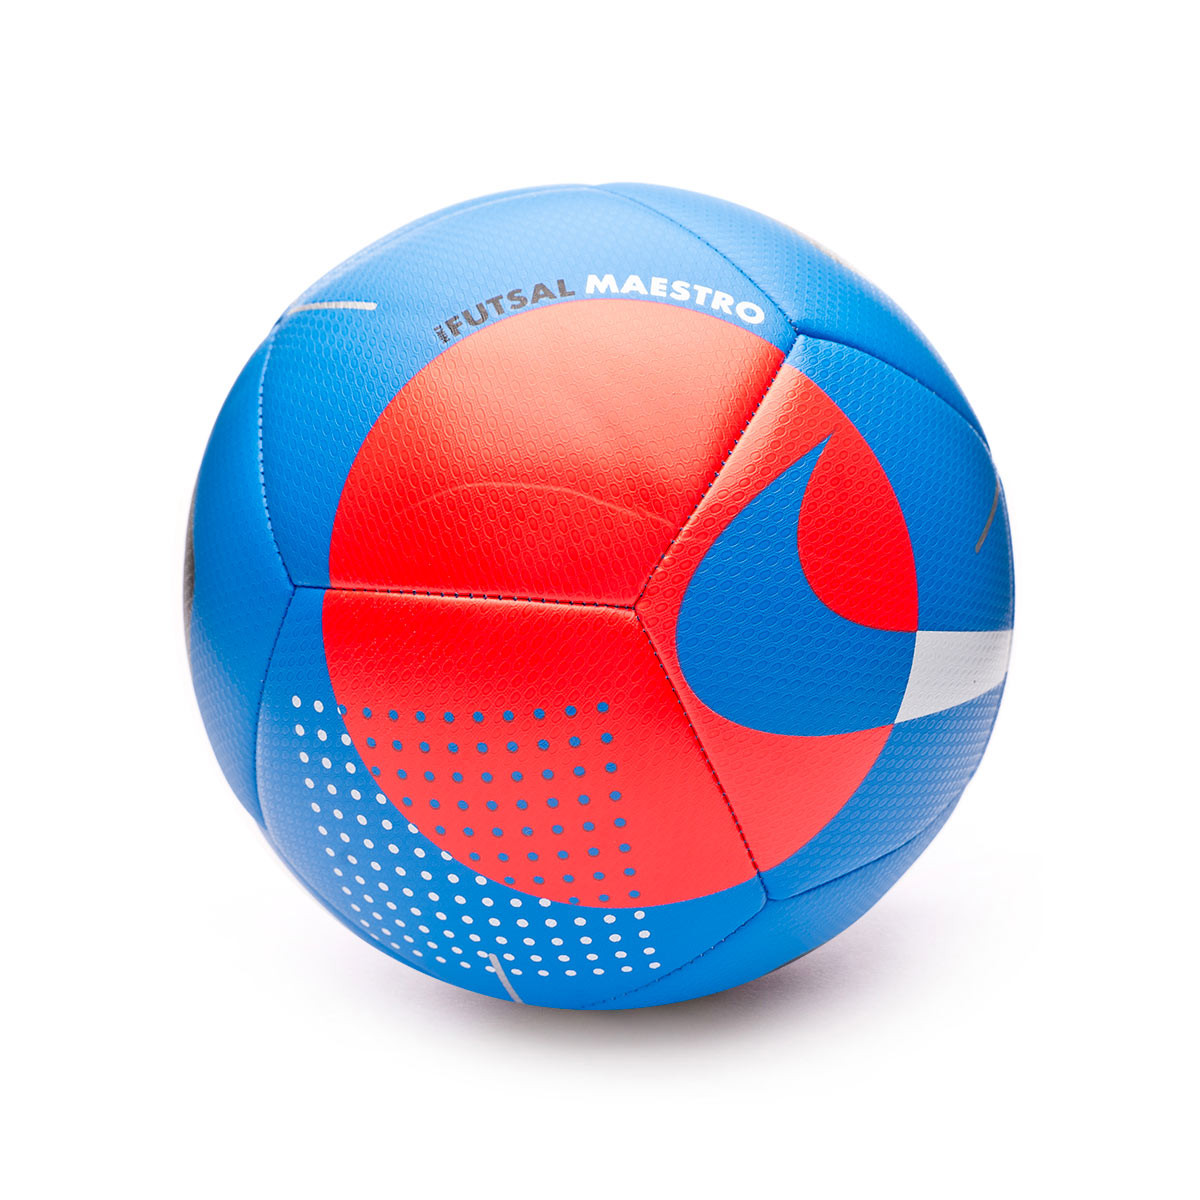 Ball Nike Futsal Maestro 2020-2021 